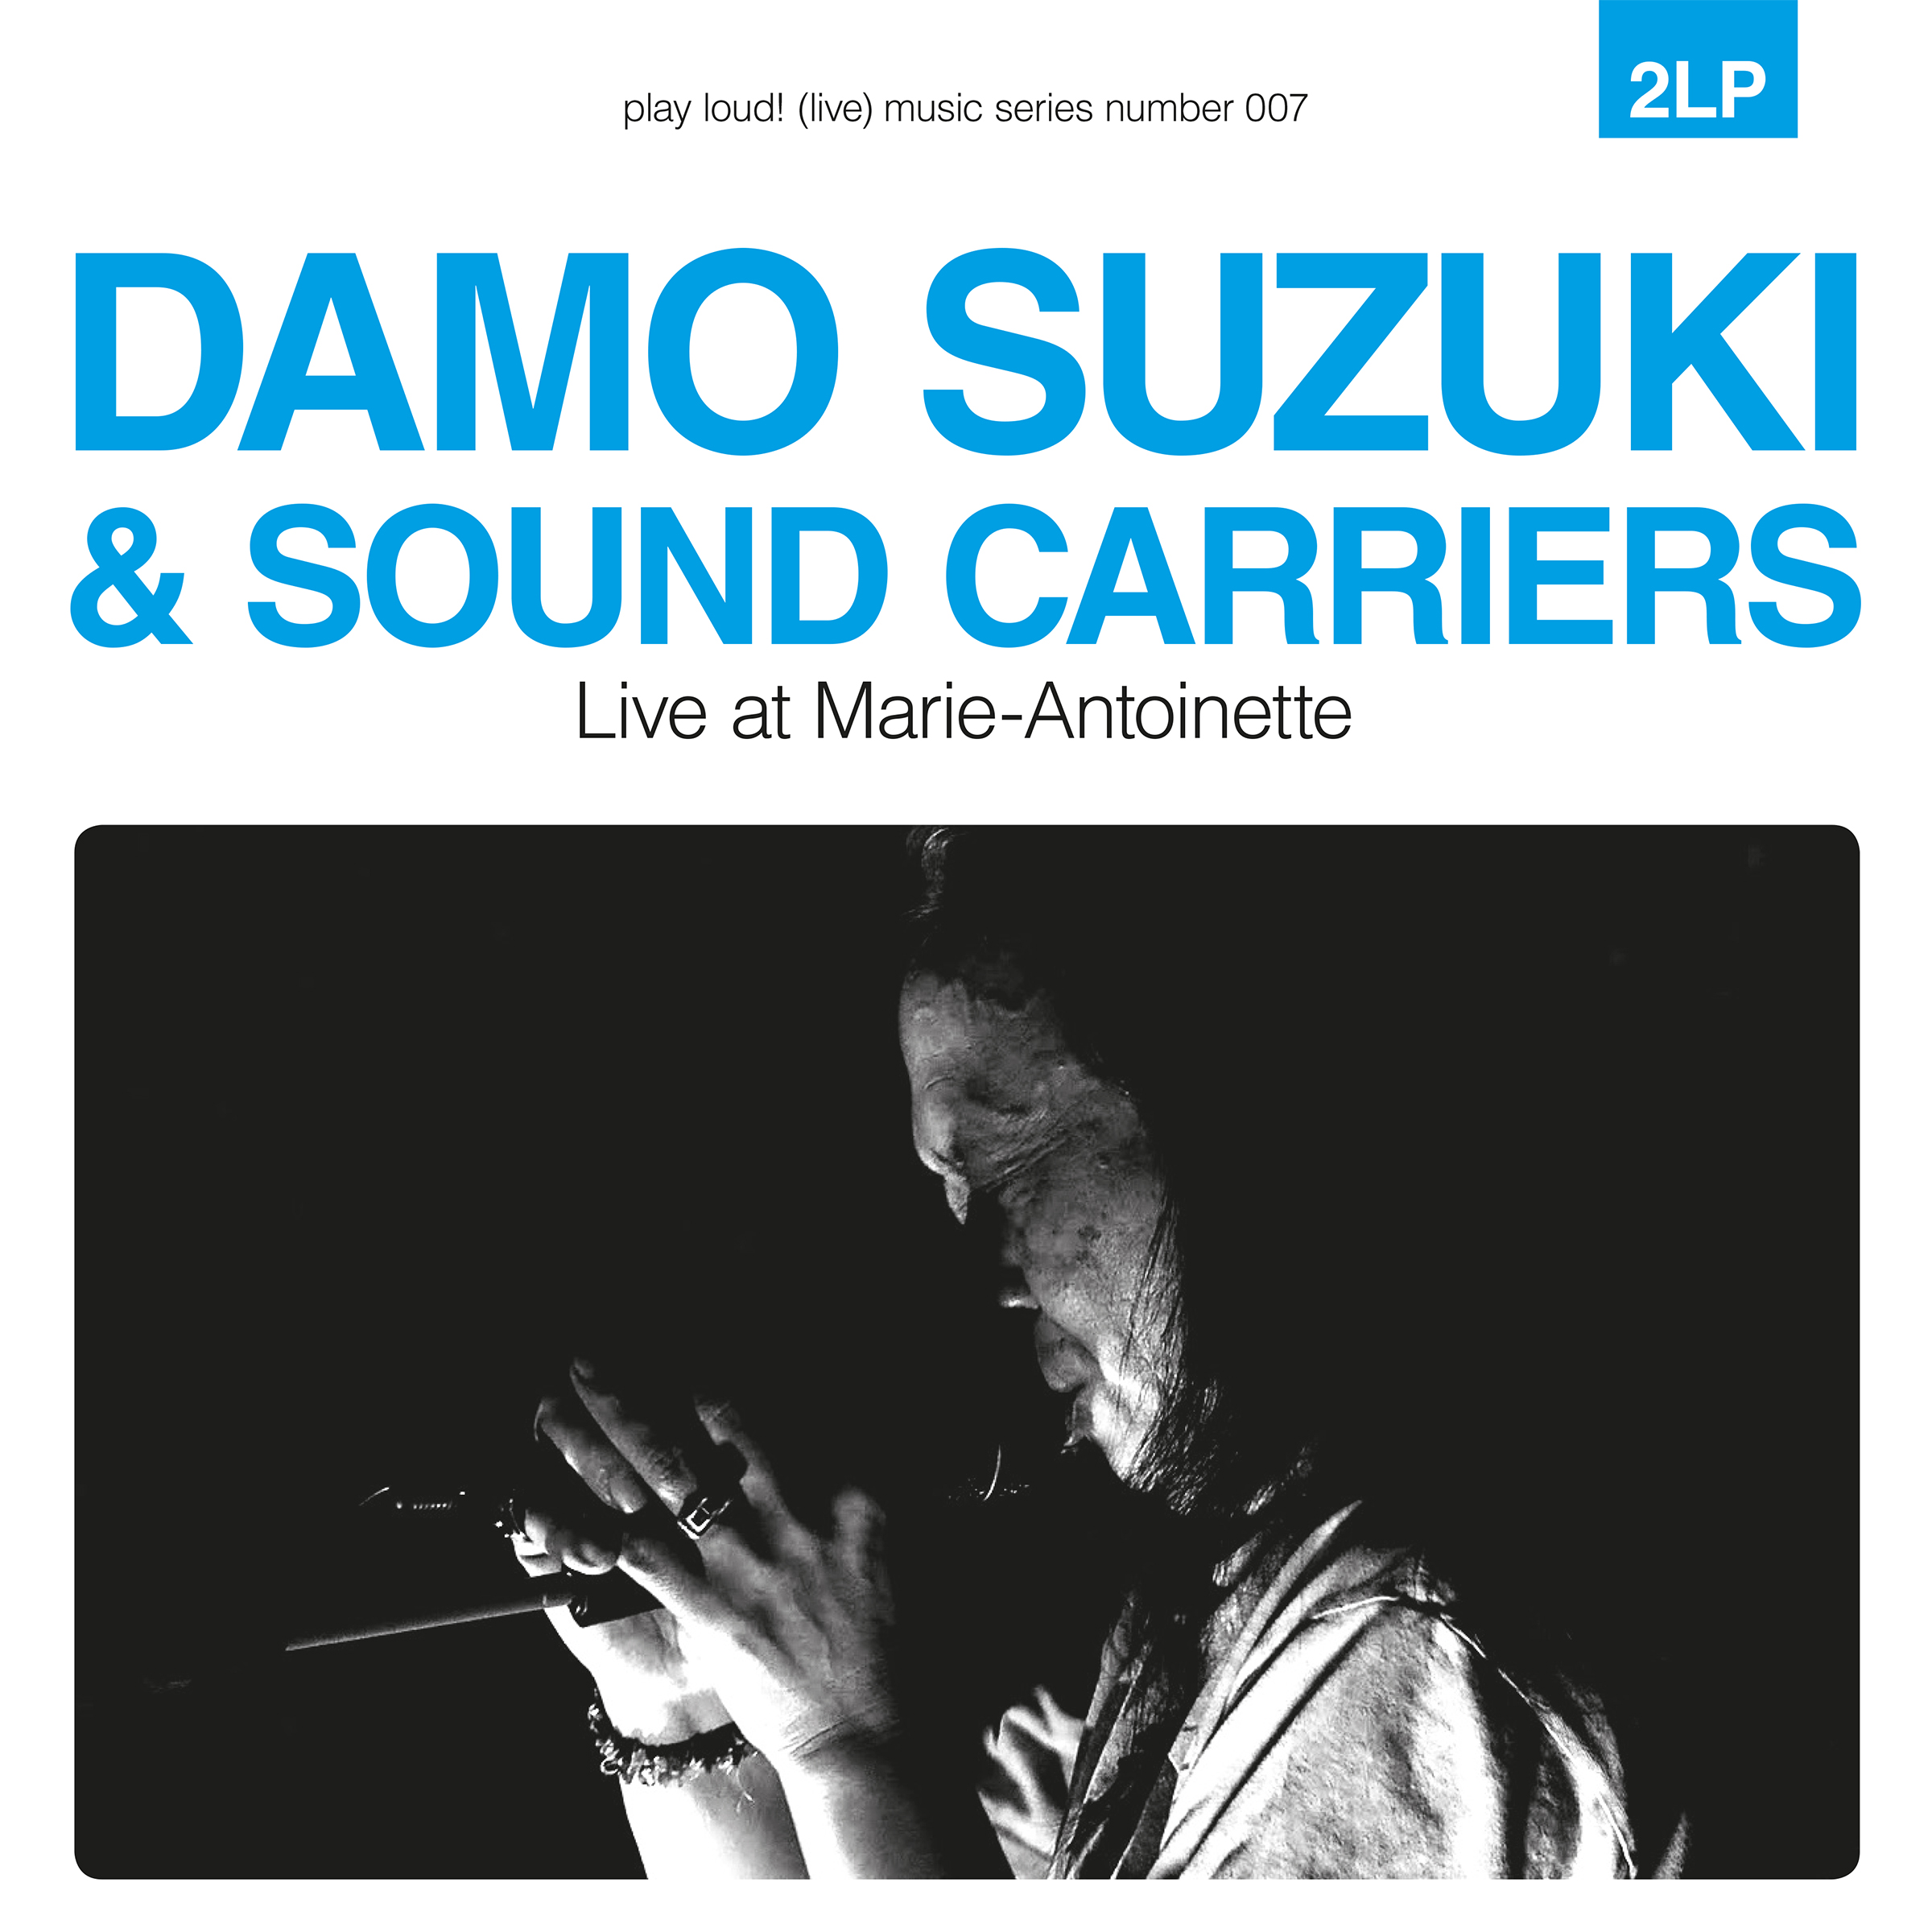 Damo Suzuki & Sound Carriers - Live at Marie-Antoinette